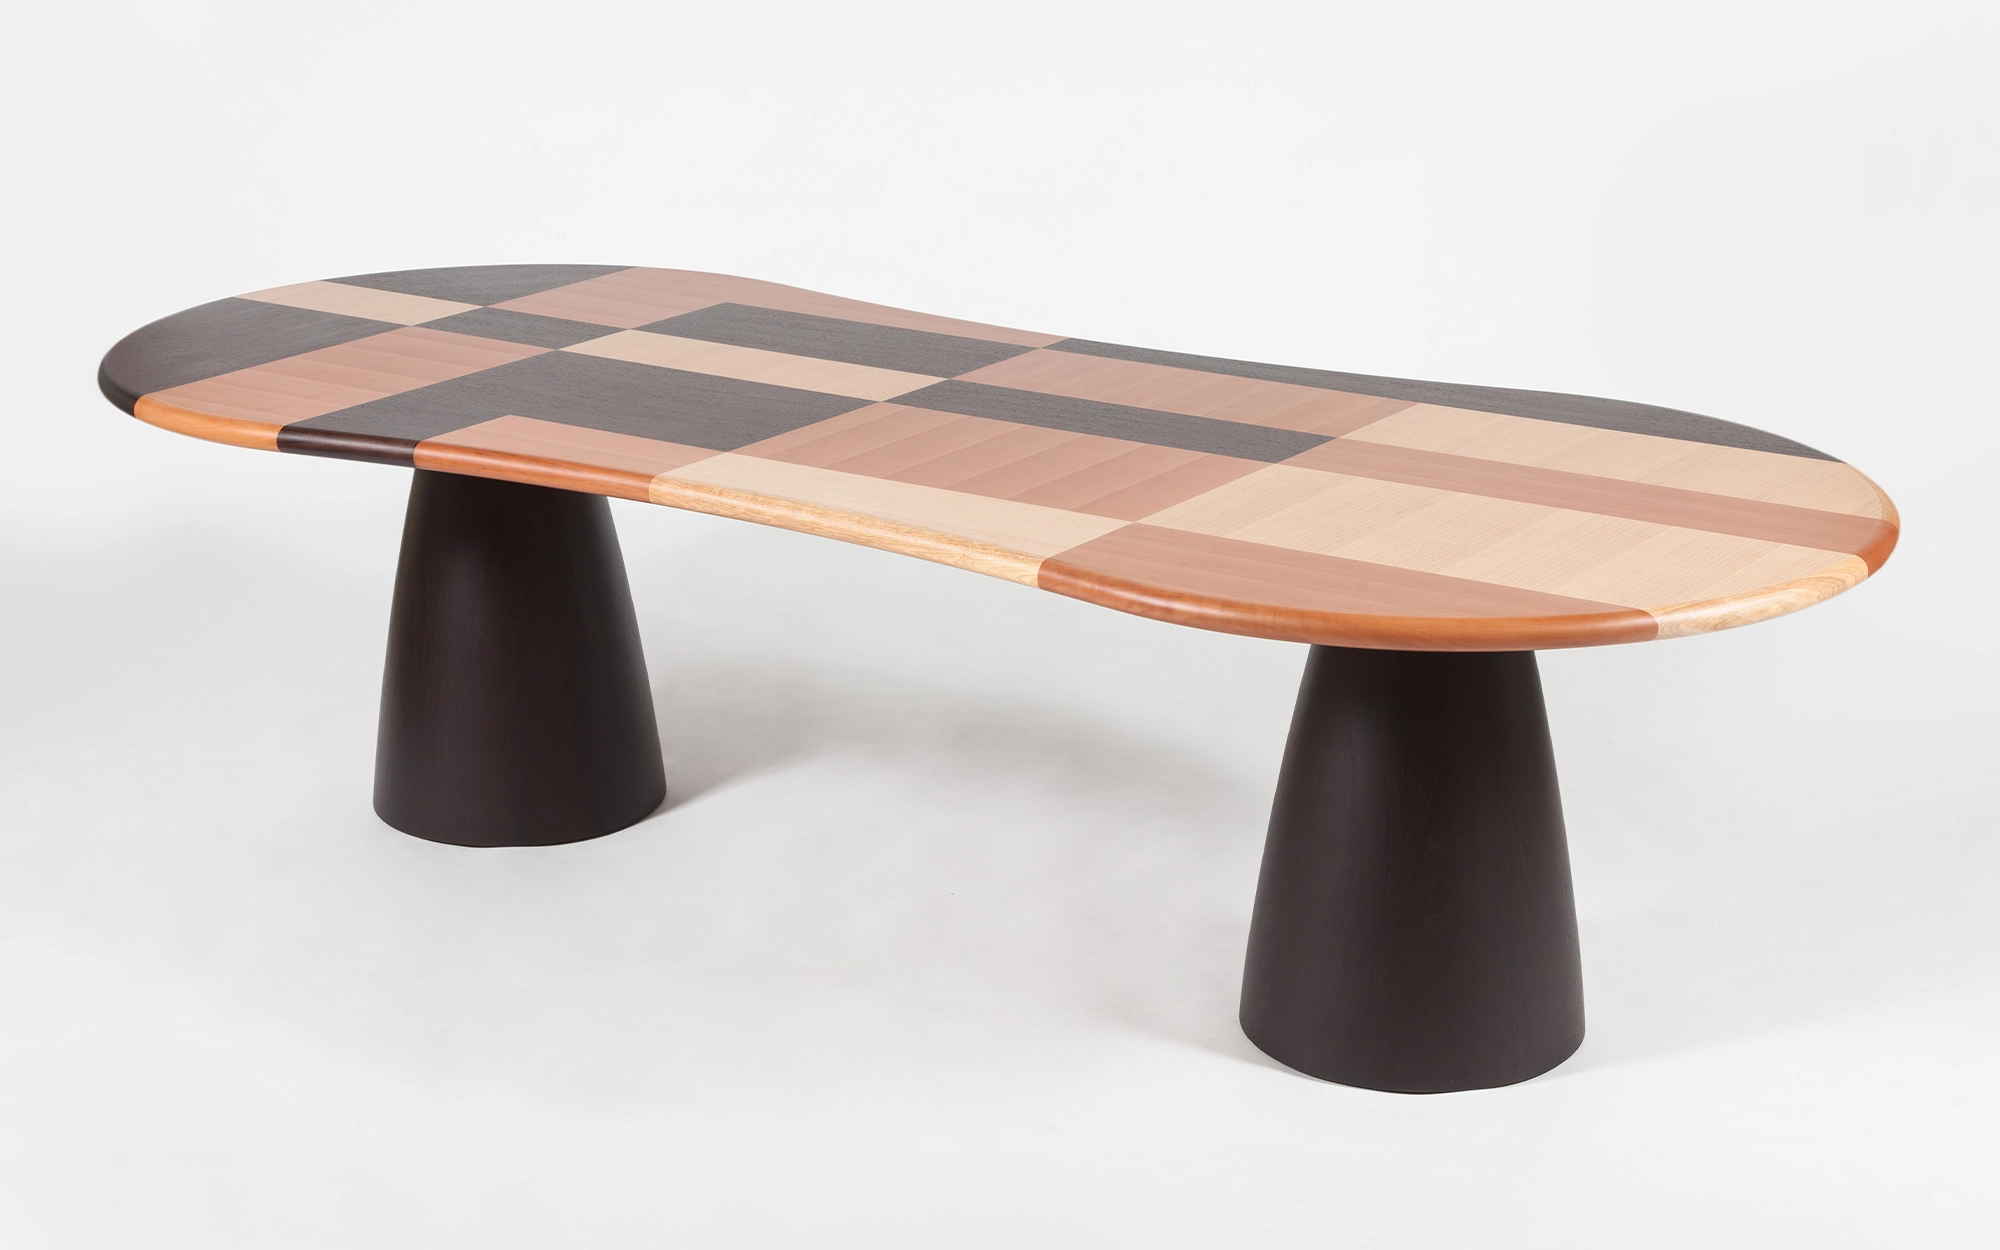 Firenze Table - Alessandro Mendini - table - Galerie kreo